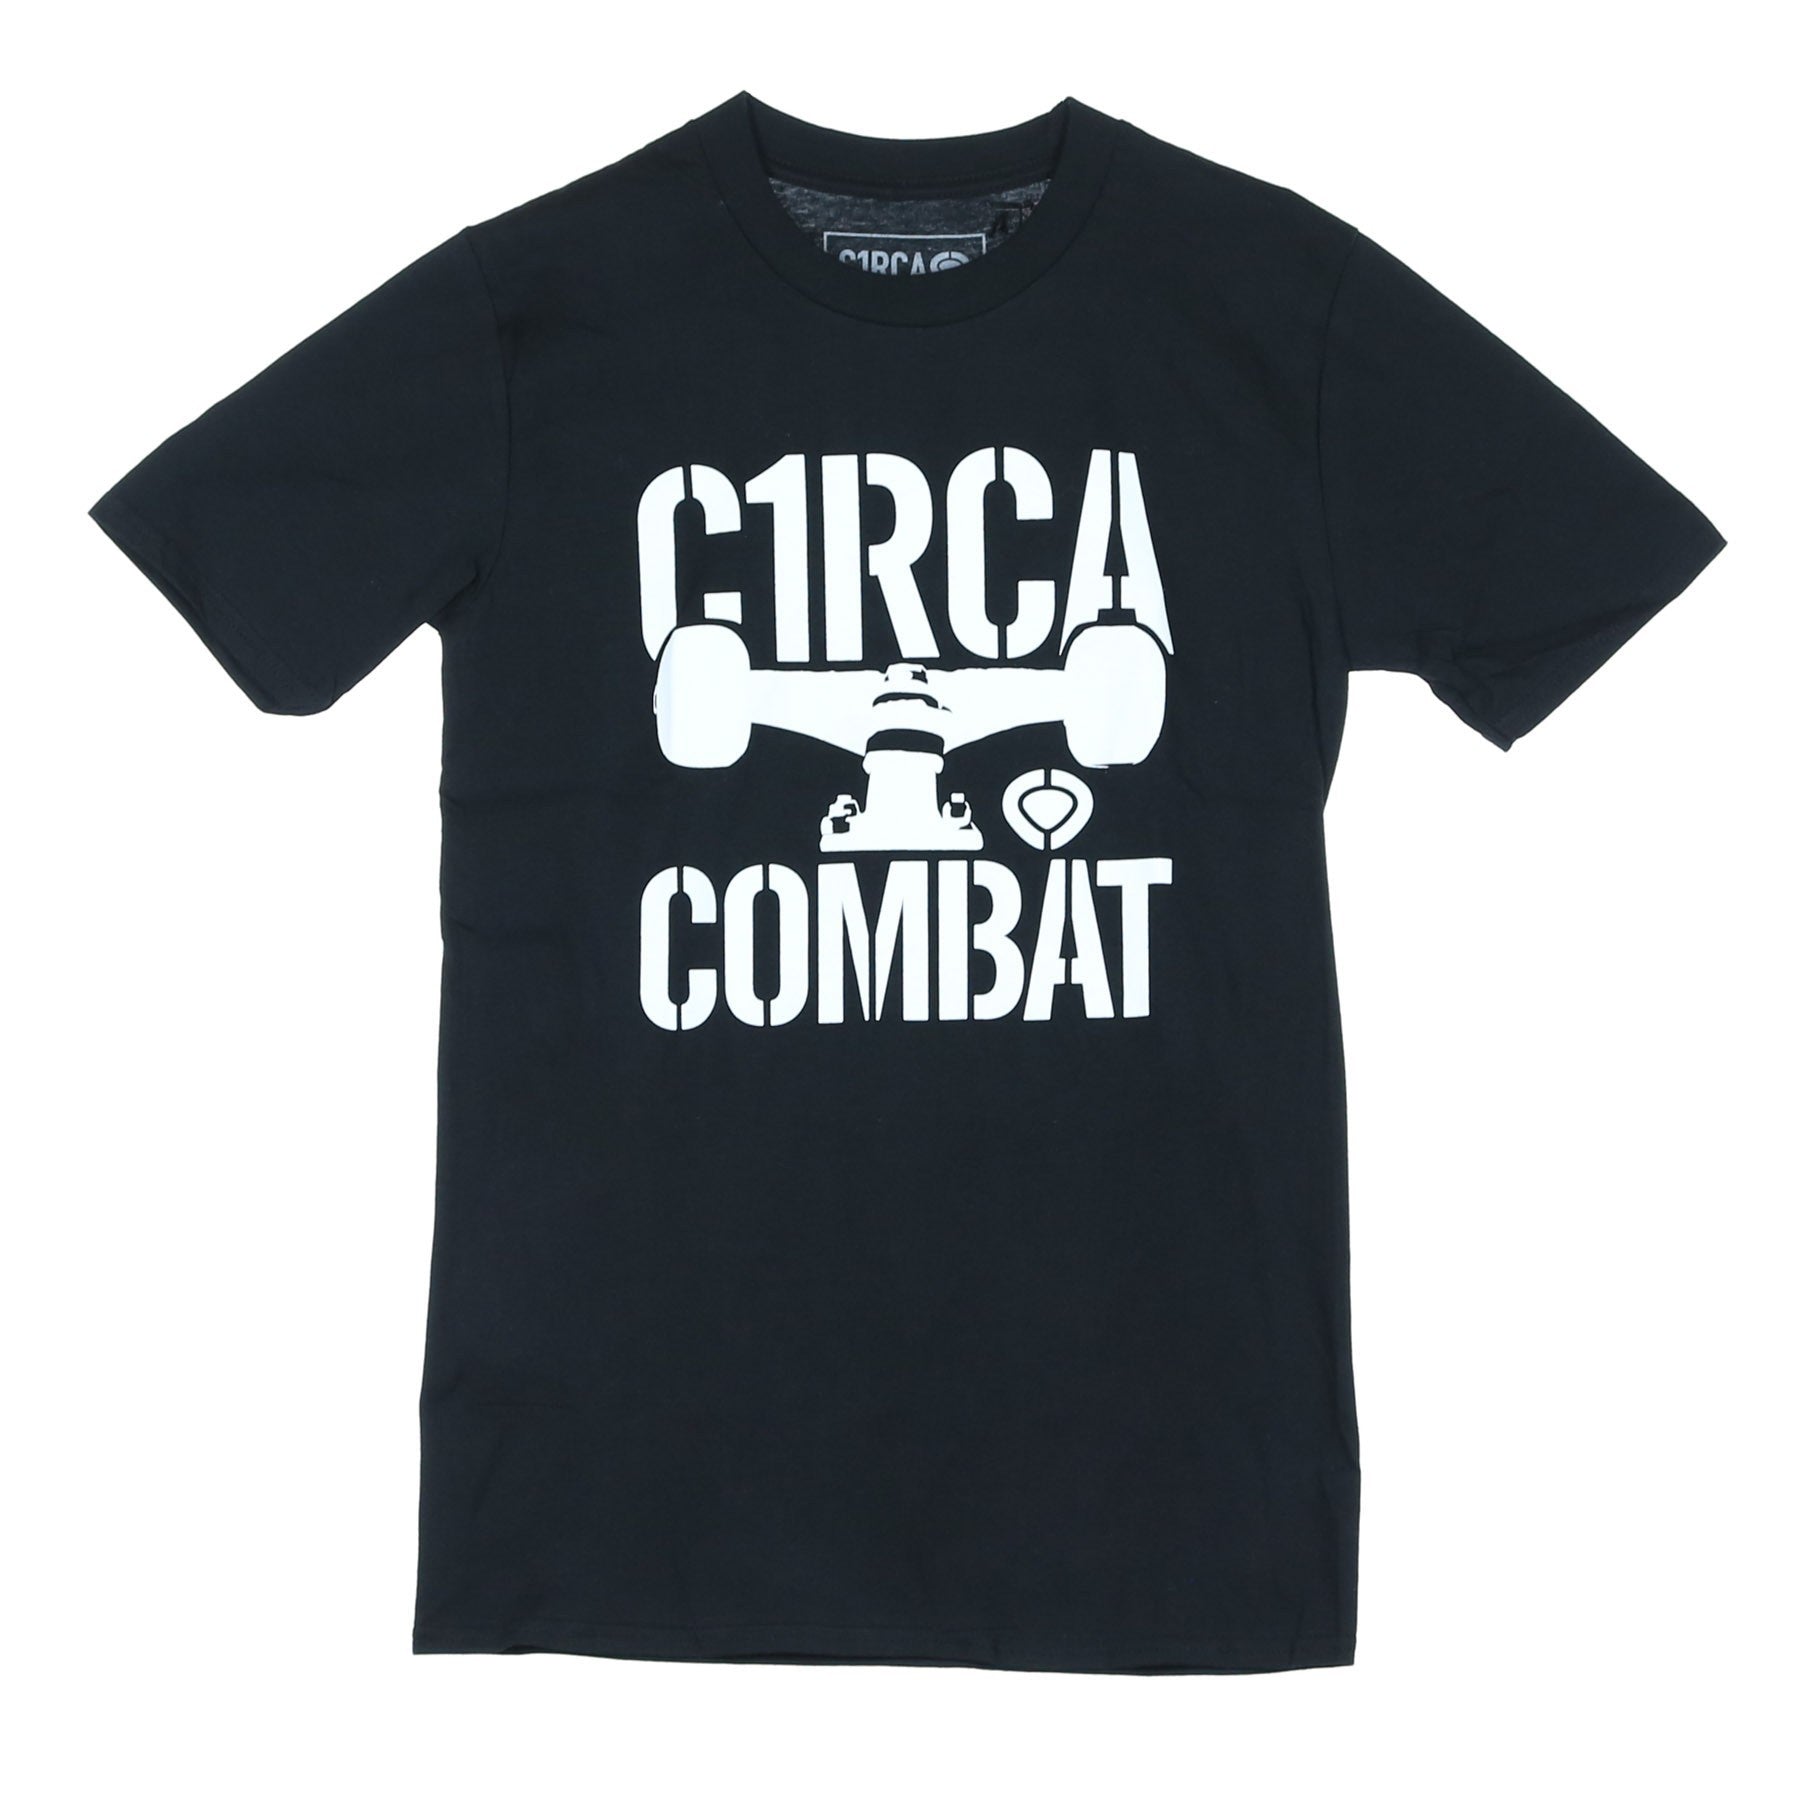 C1rca, Maglietta Uomo Combat Tee, Black/white